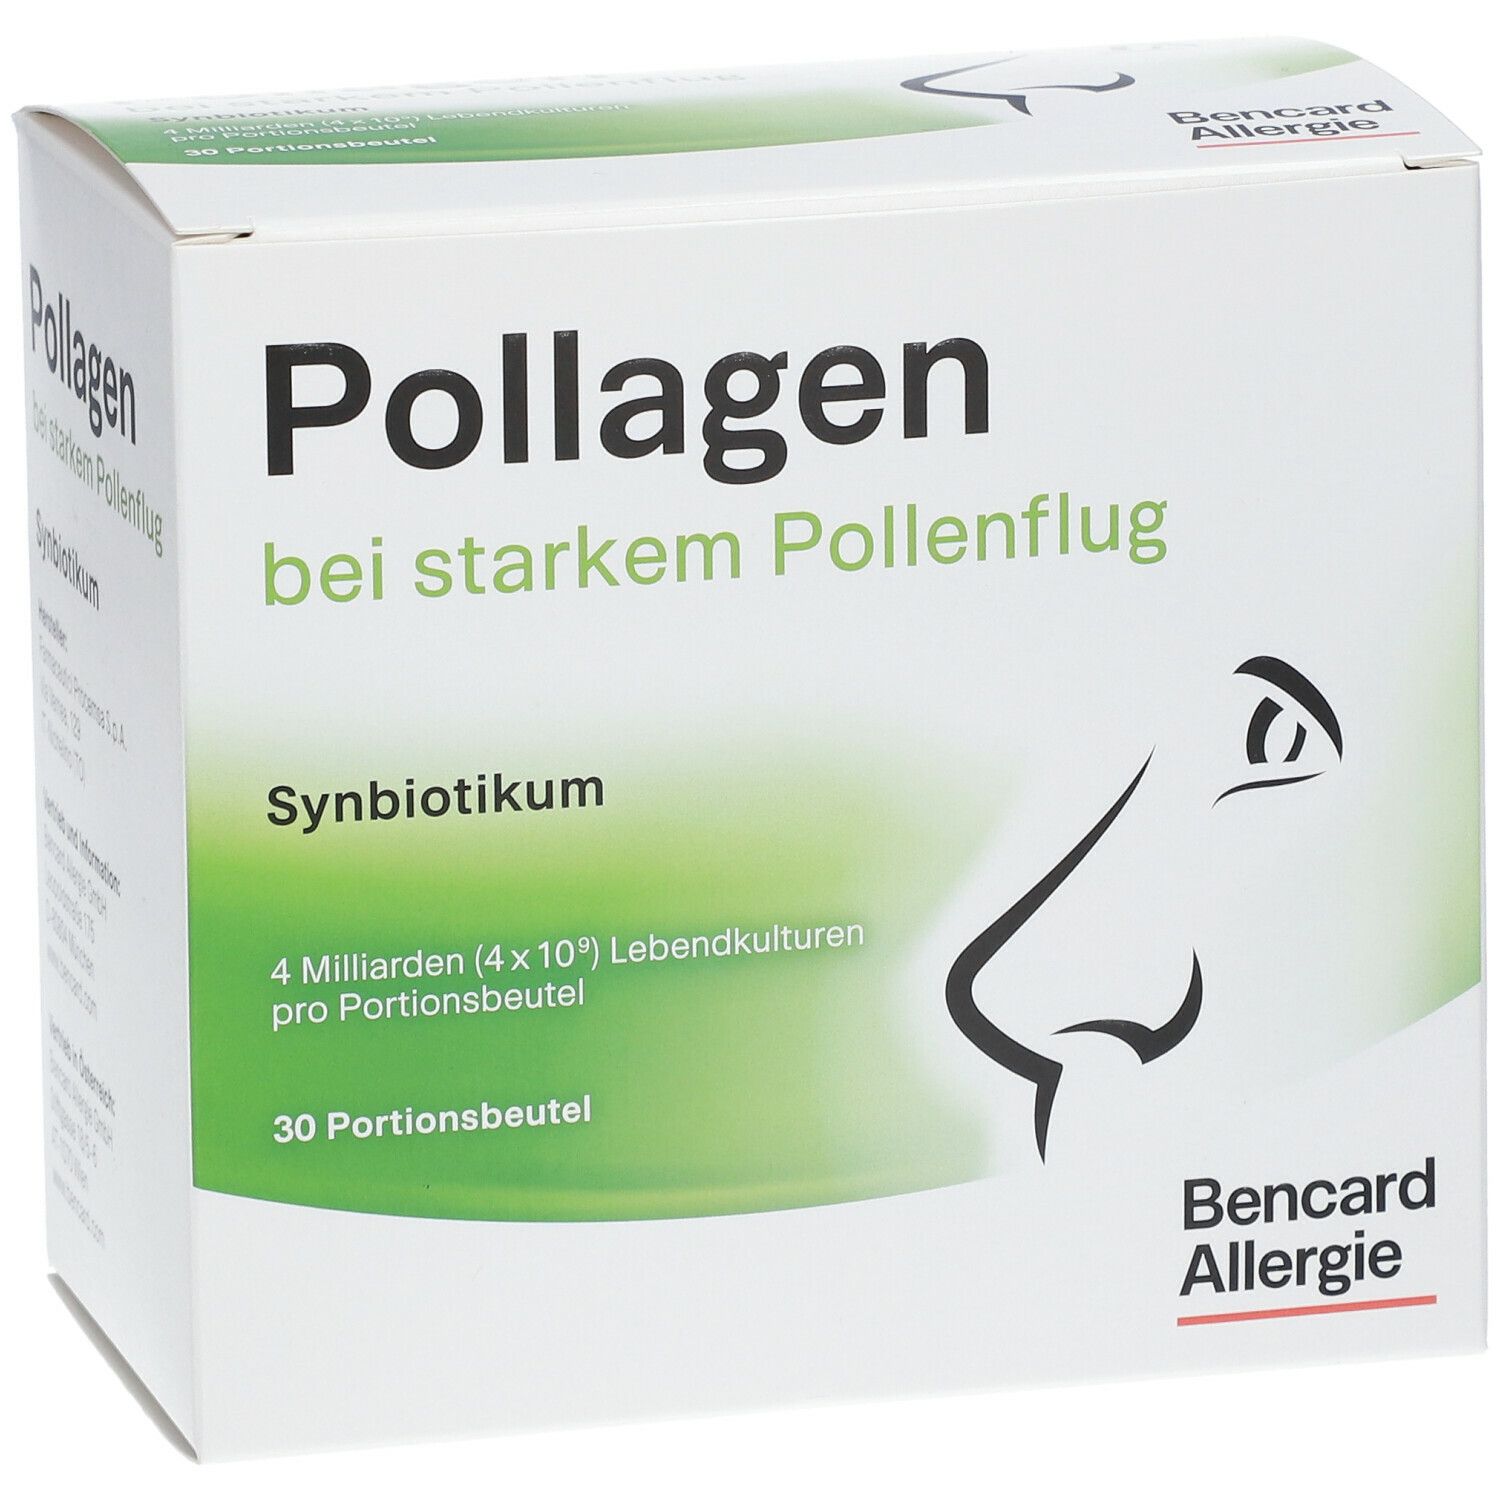 Pollagen